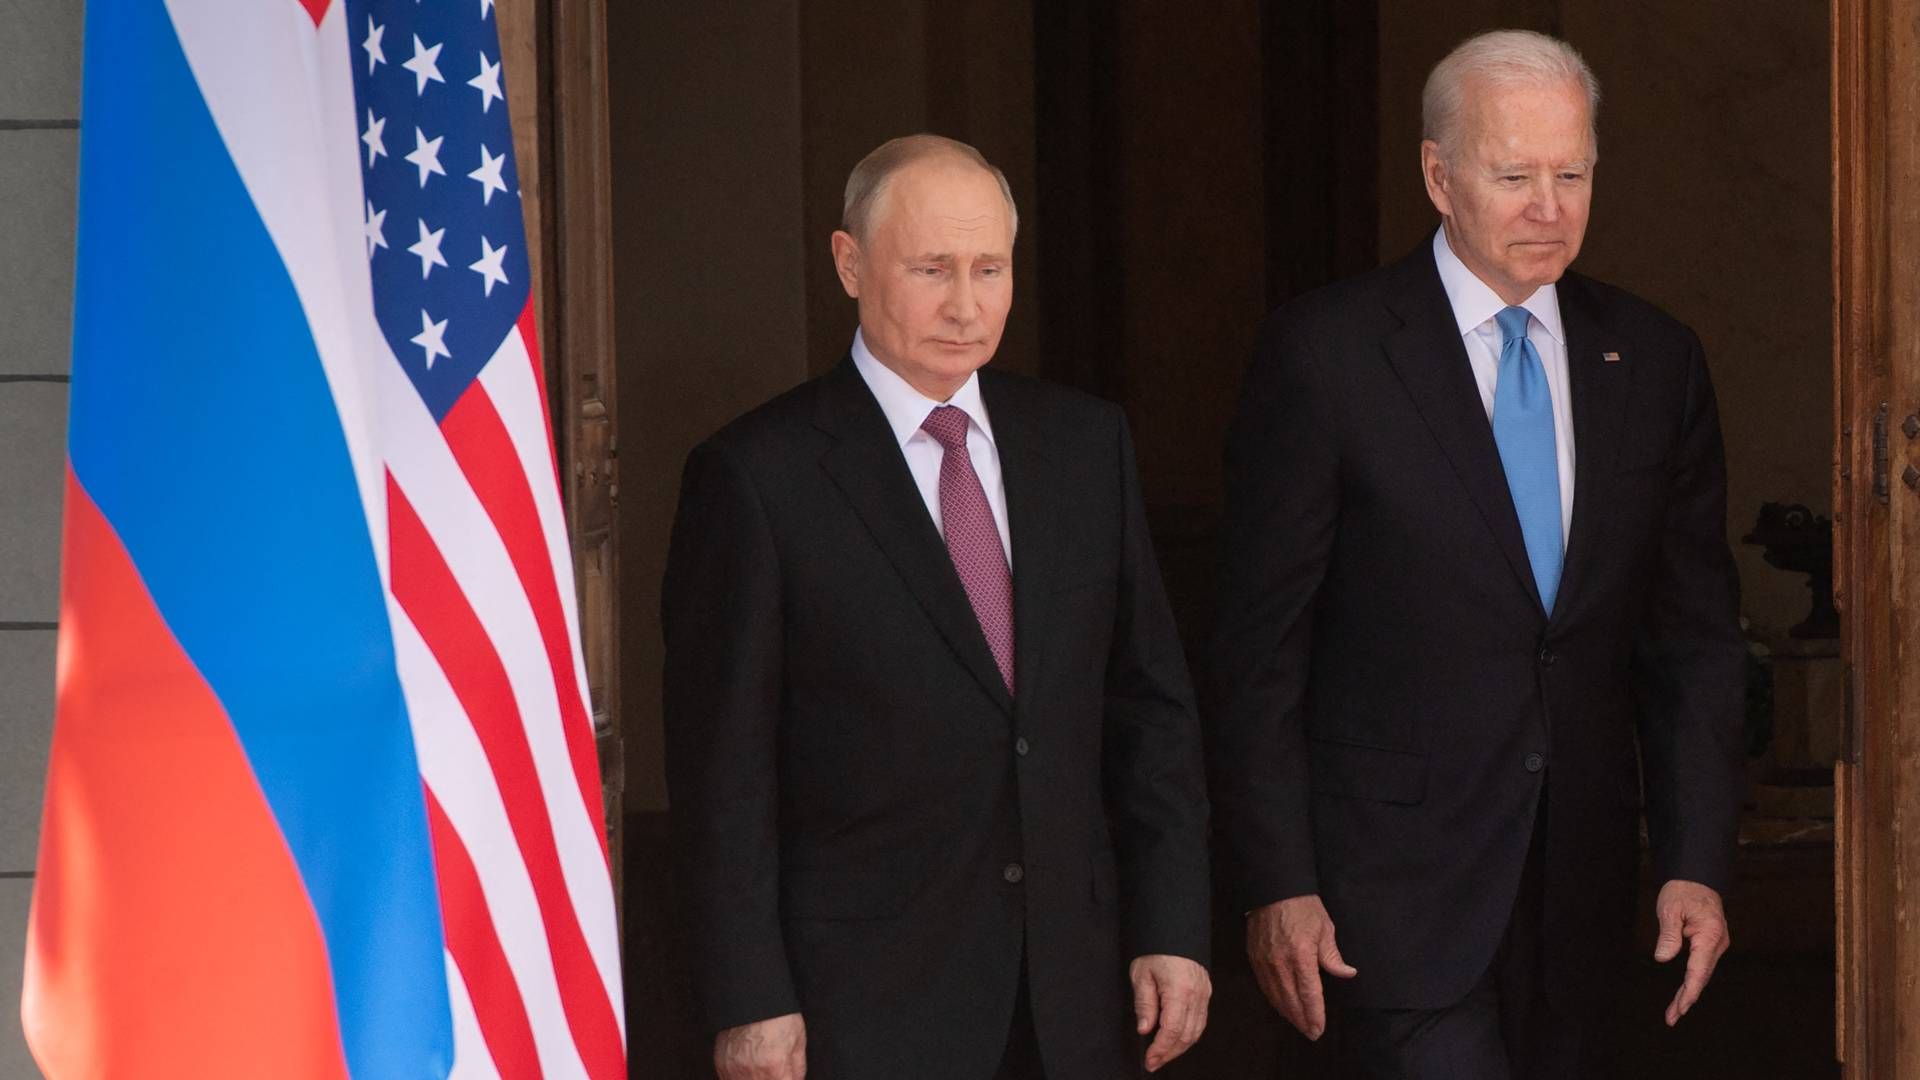 Biden reagerer nu på Putins anerkendelser af regionerne Lugansk og Donetsk. | Foto: SAUL LOEB/AFP / POOL